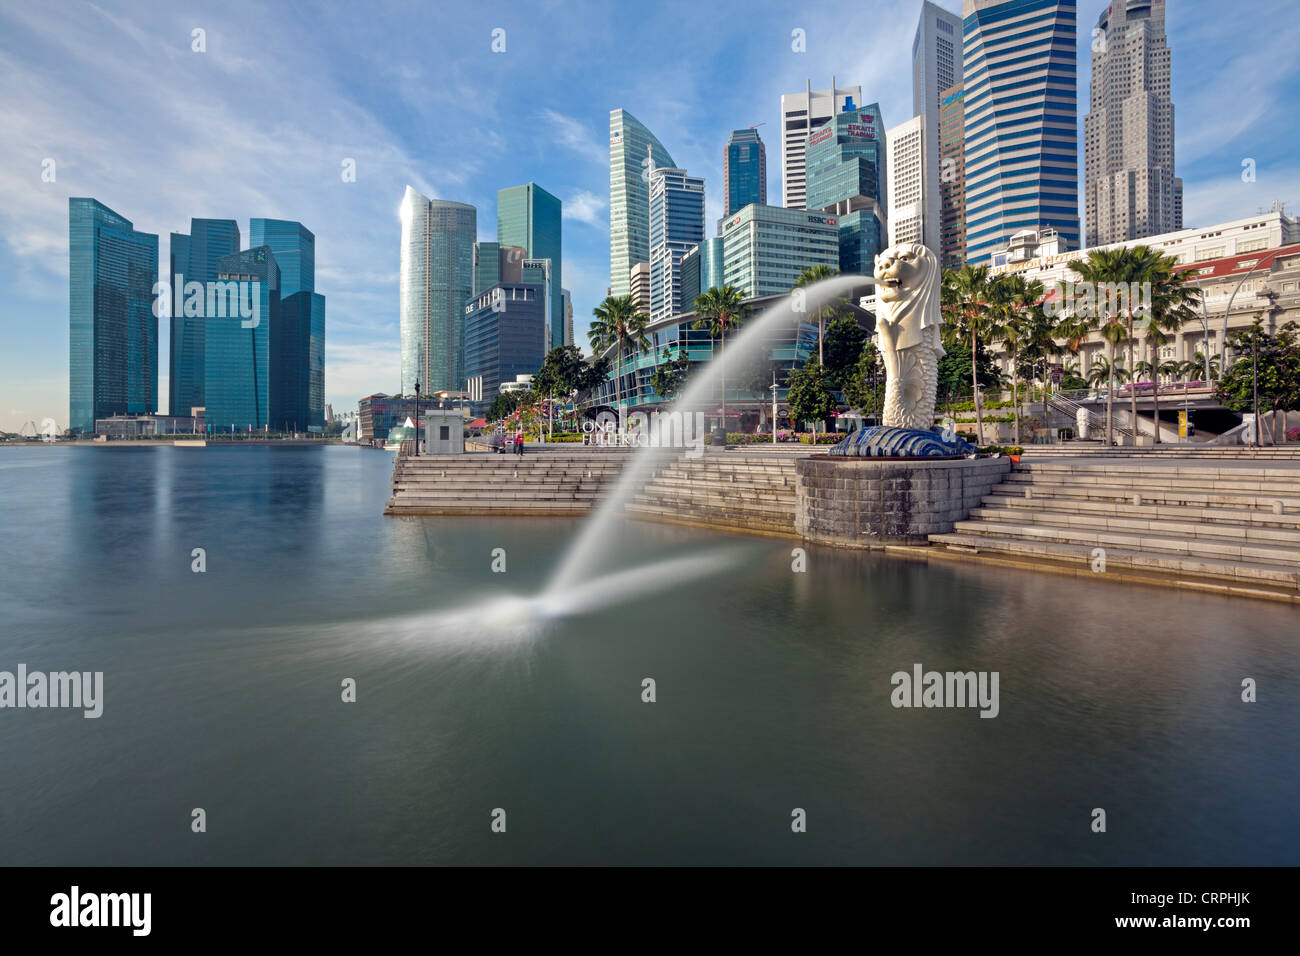 La statua Merlion con lo skyline della città in background, Marina Bay, Singapore, Sud-est asiatico Foto Stock